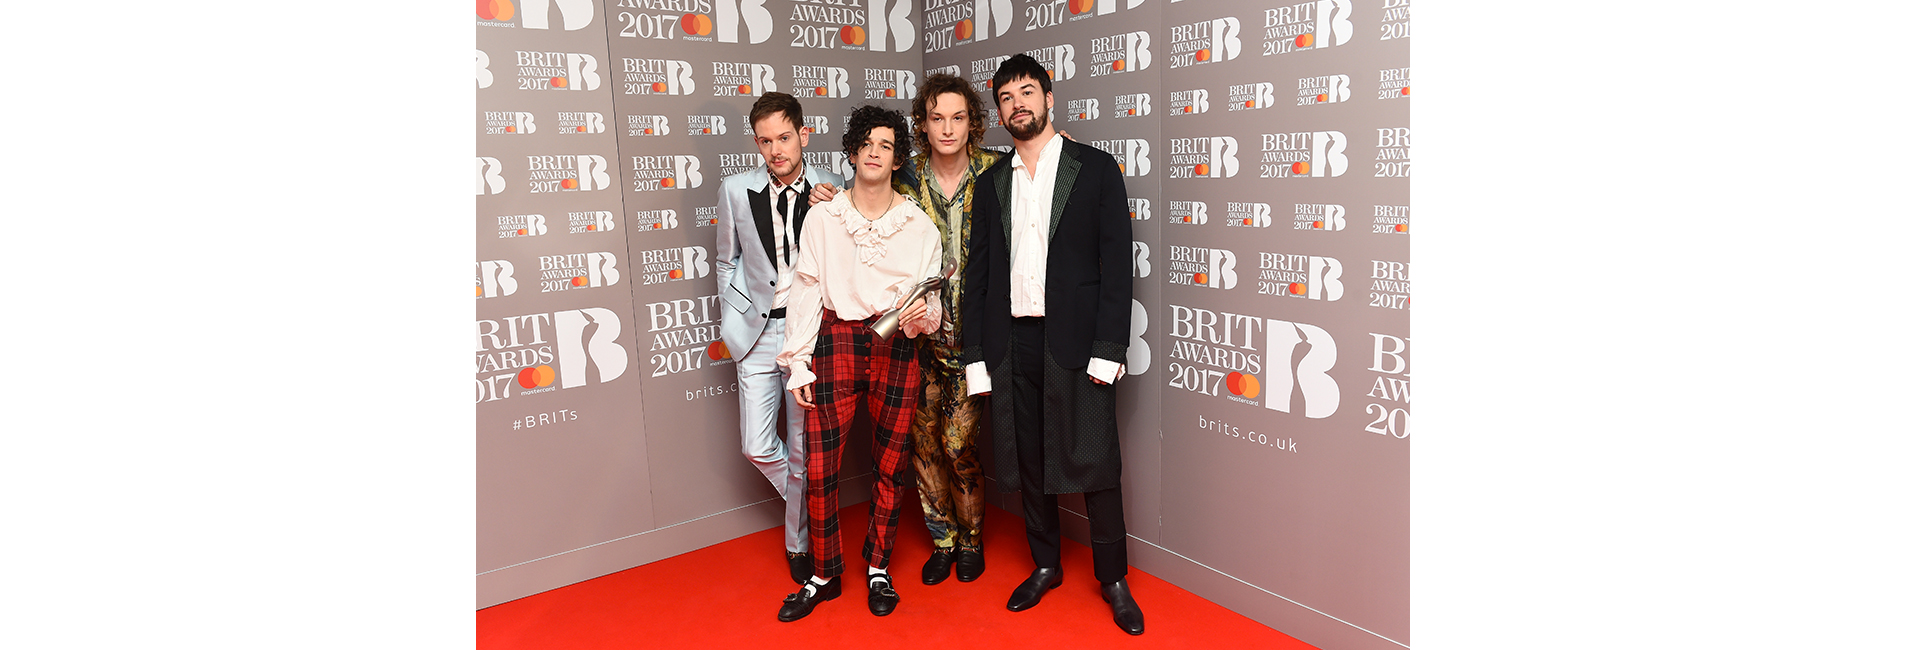 Brit Awards 2017: итоги церемонии и гости вечера (фото 13)